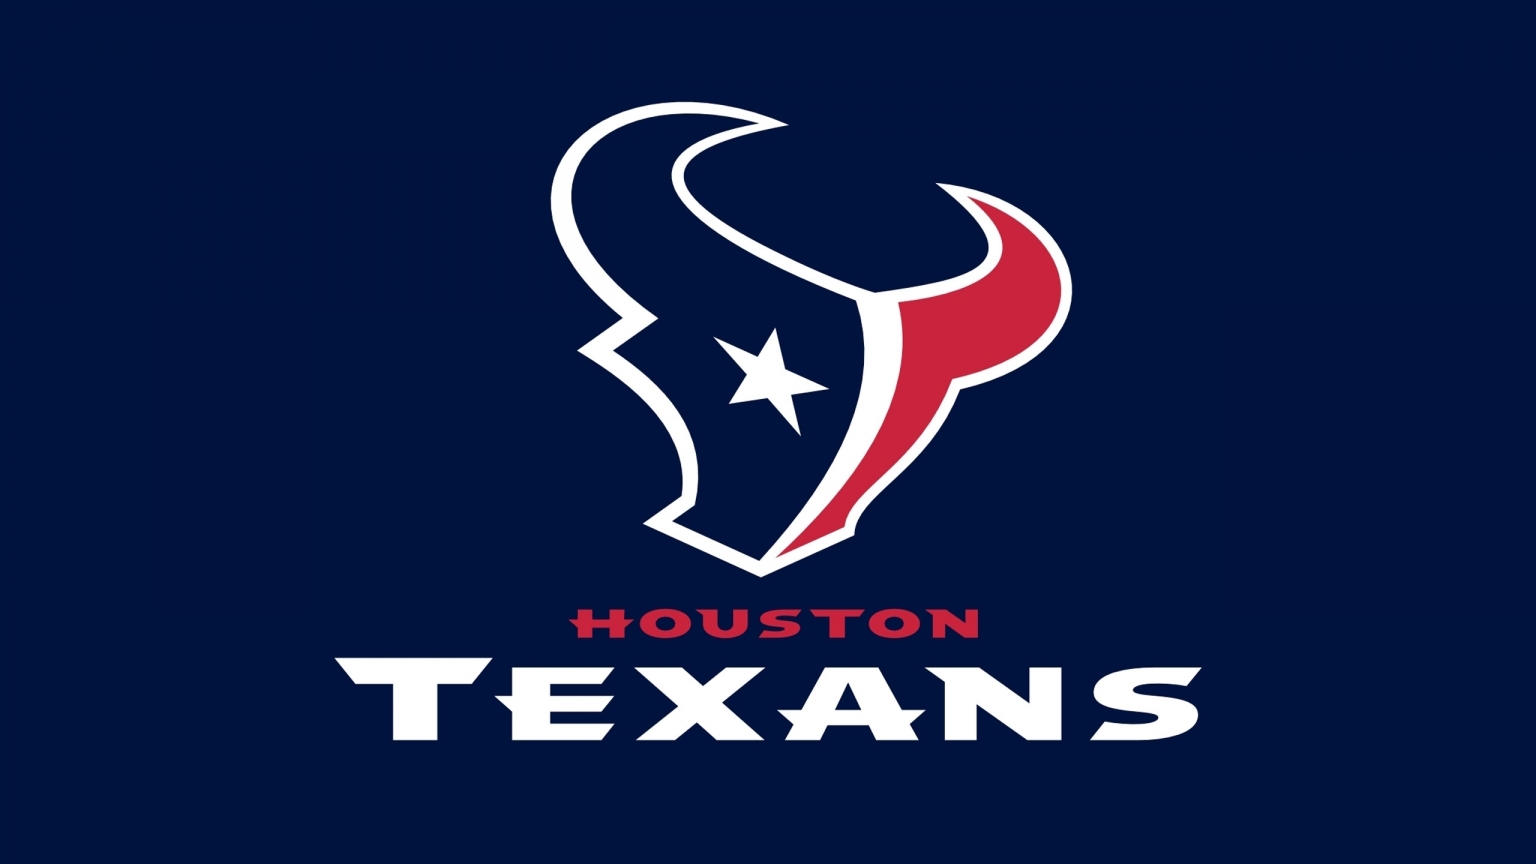 Houston Texans Logo for 1536 x 864 HDTV resolution